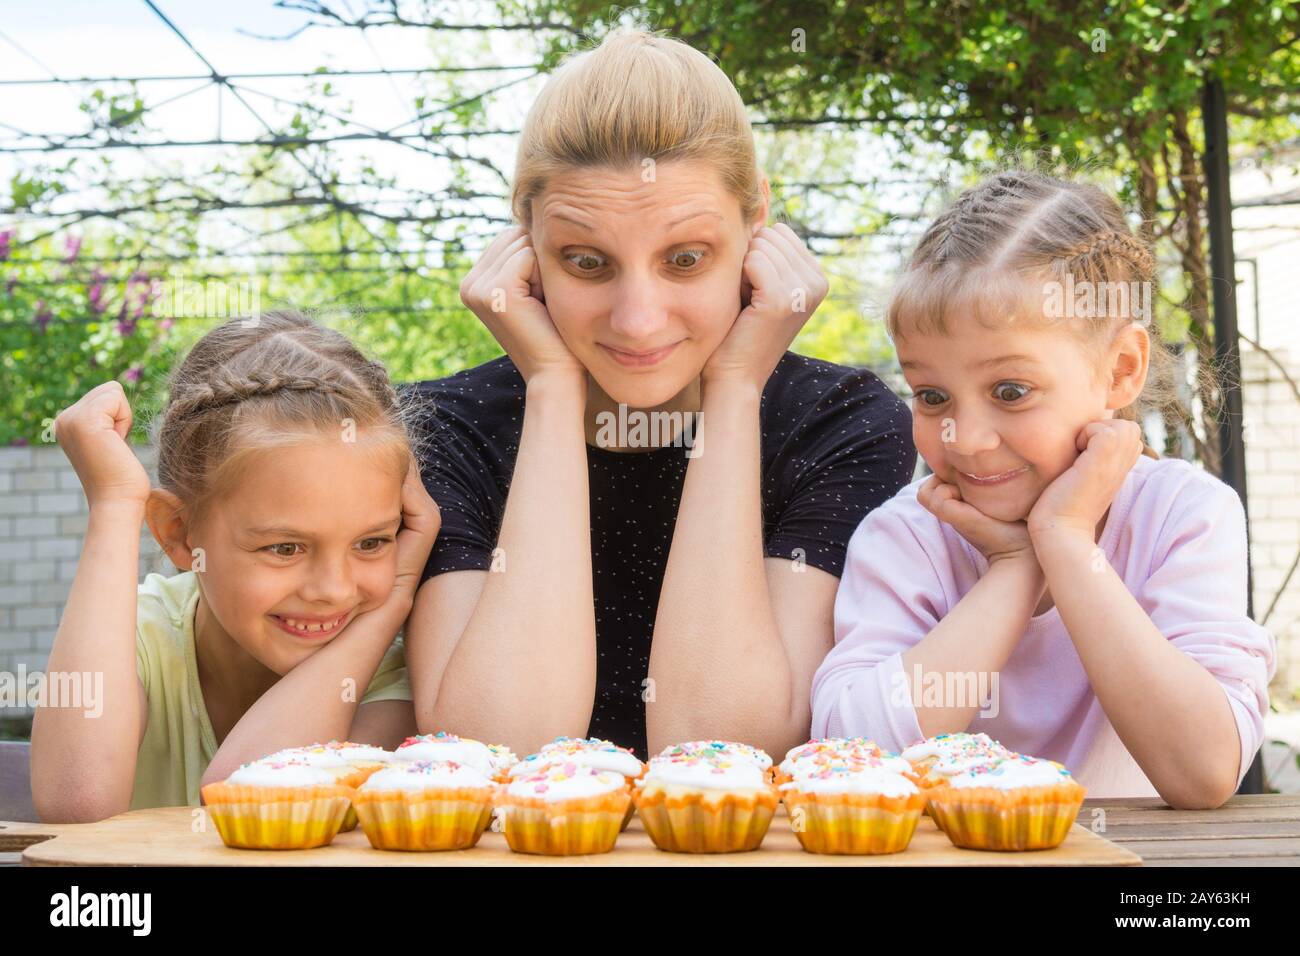 Mutter und zwei Töchter mit einen guten Appetit und großen Augen Blick auf Ostern cupcakes Stockfoto